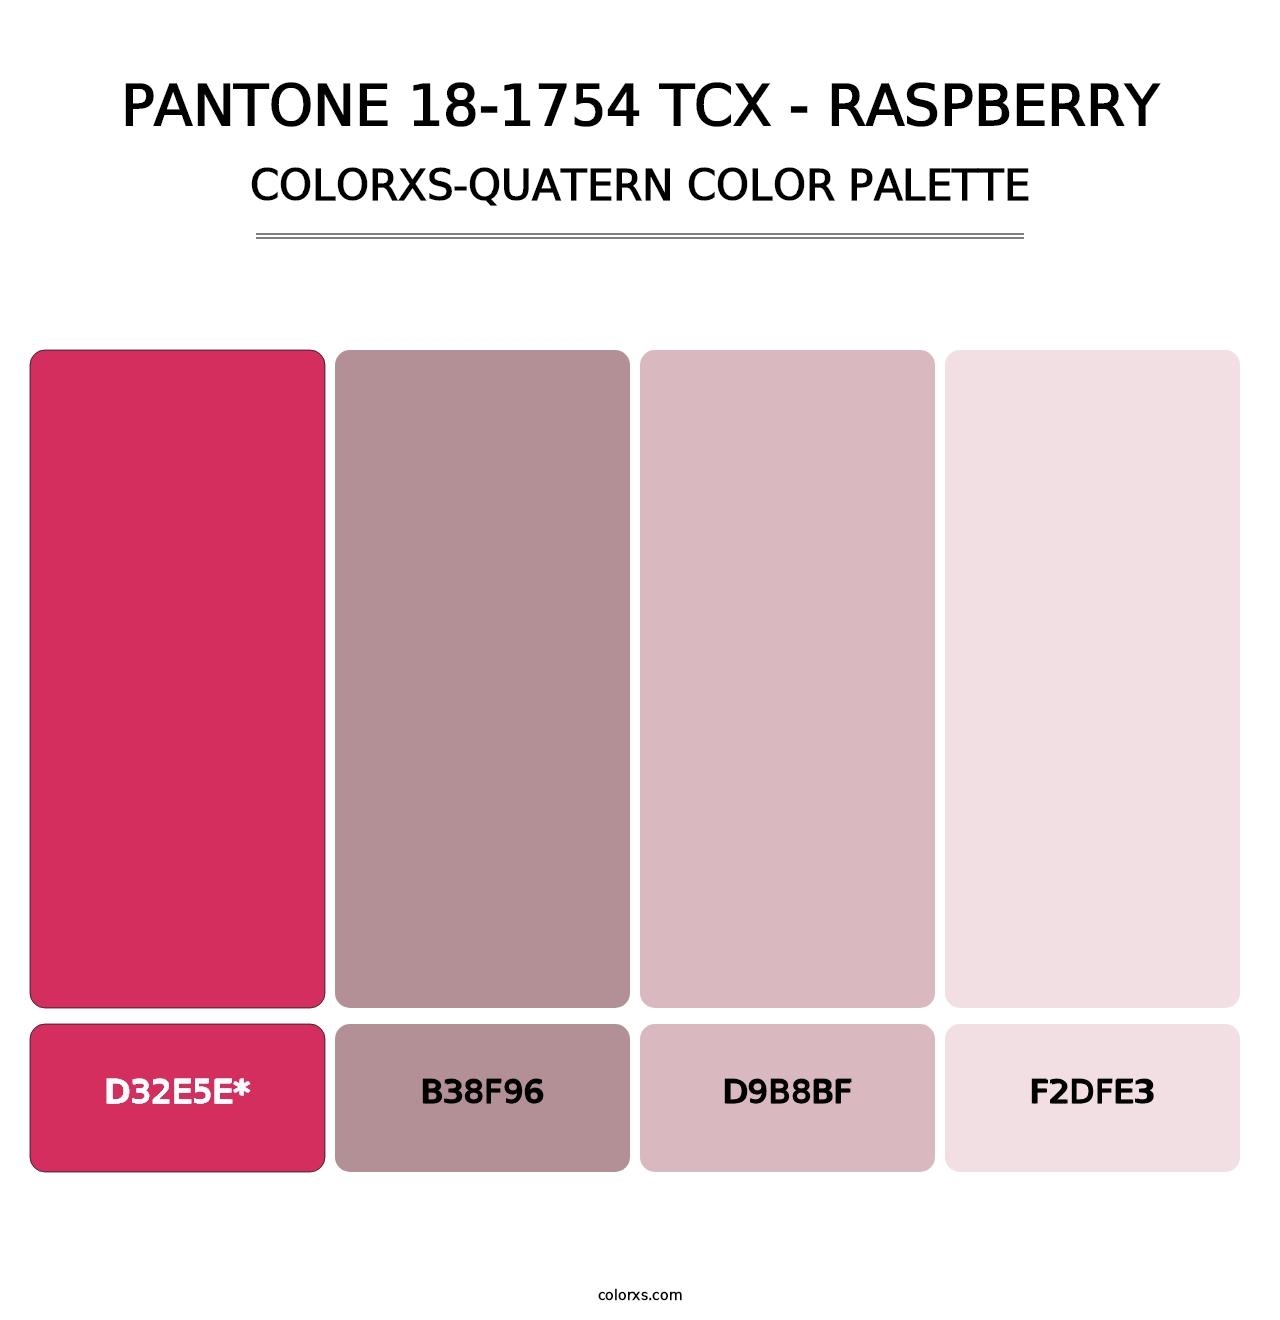 PANTONE 18-1754 TCX - Raspberry - Colorxs Quad Palette